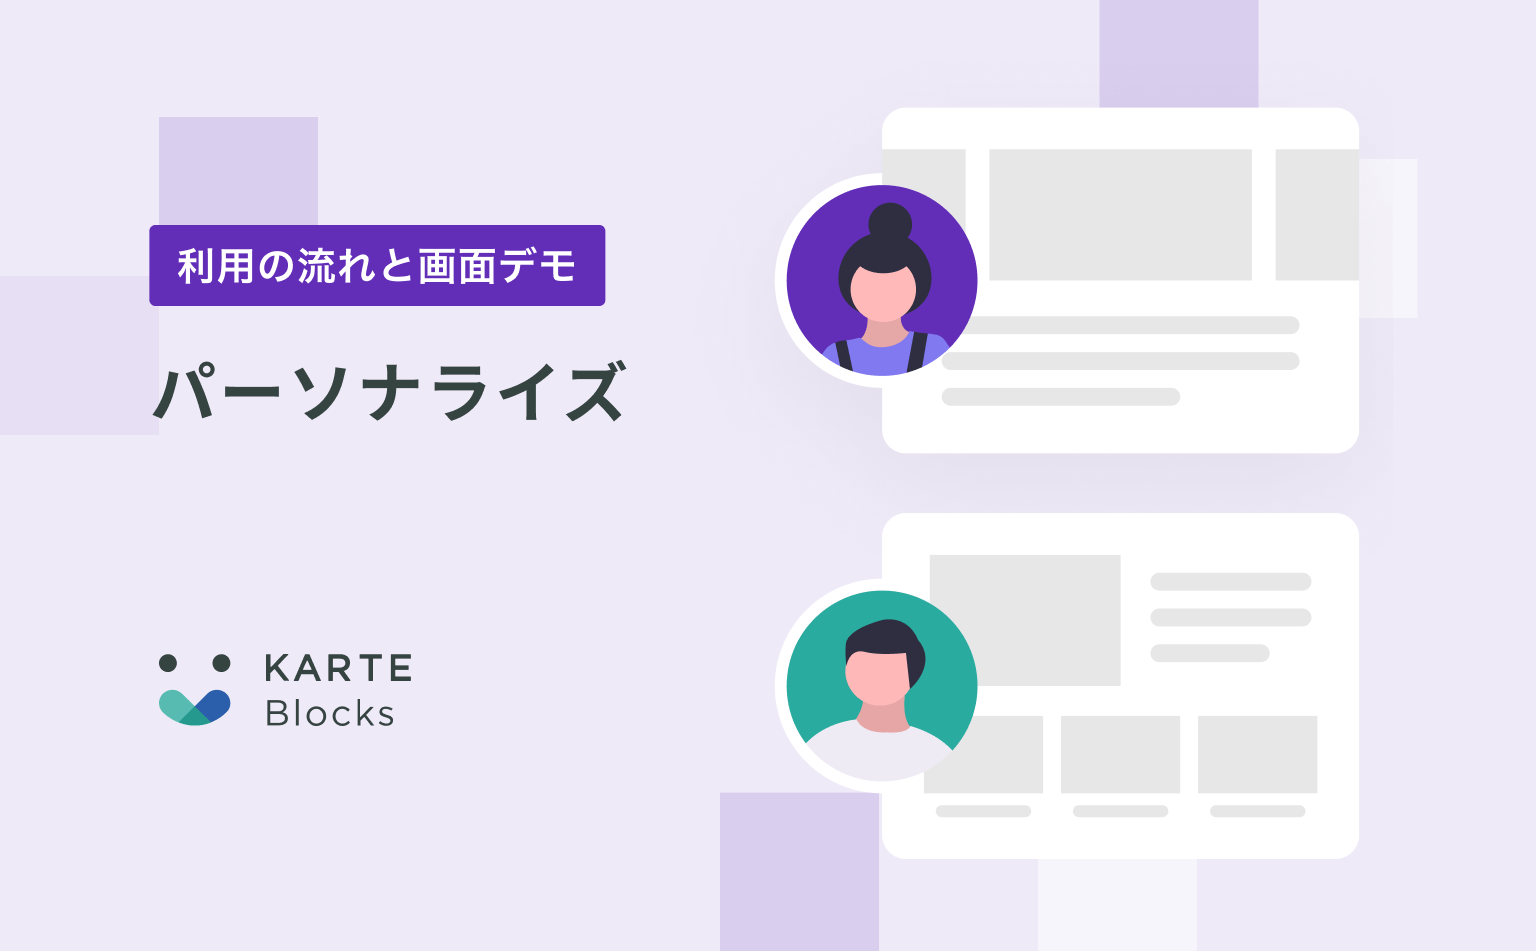 【パーソナライズ】KARTE Blocksご利用の流れと画面デモ